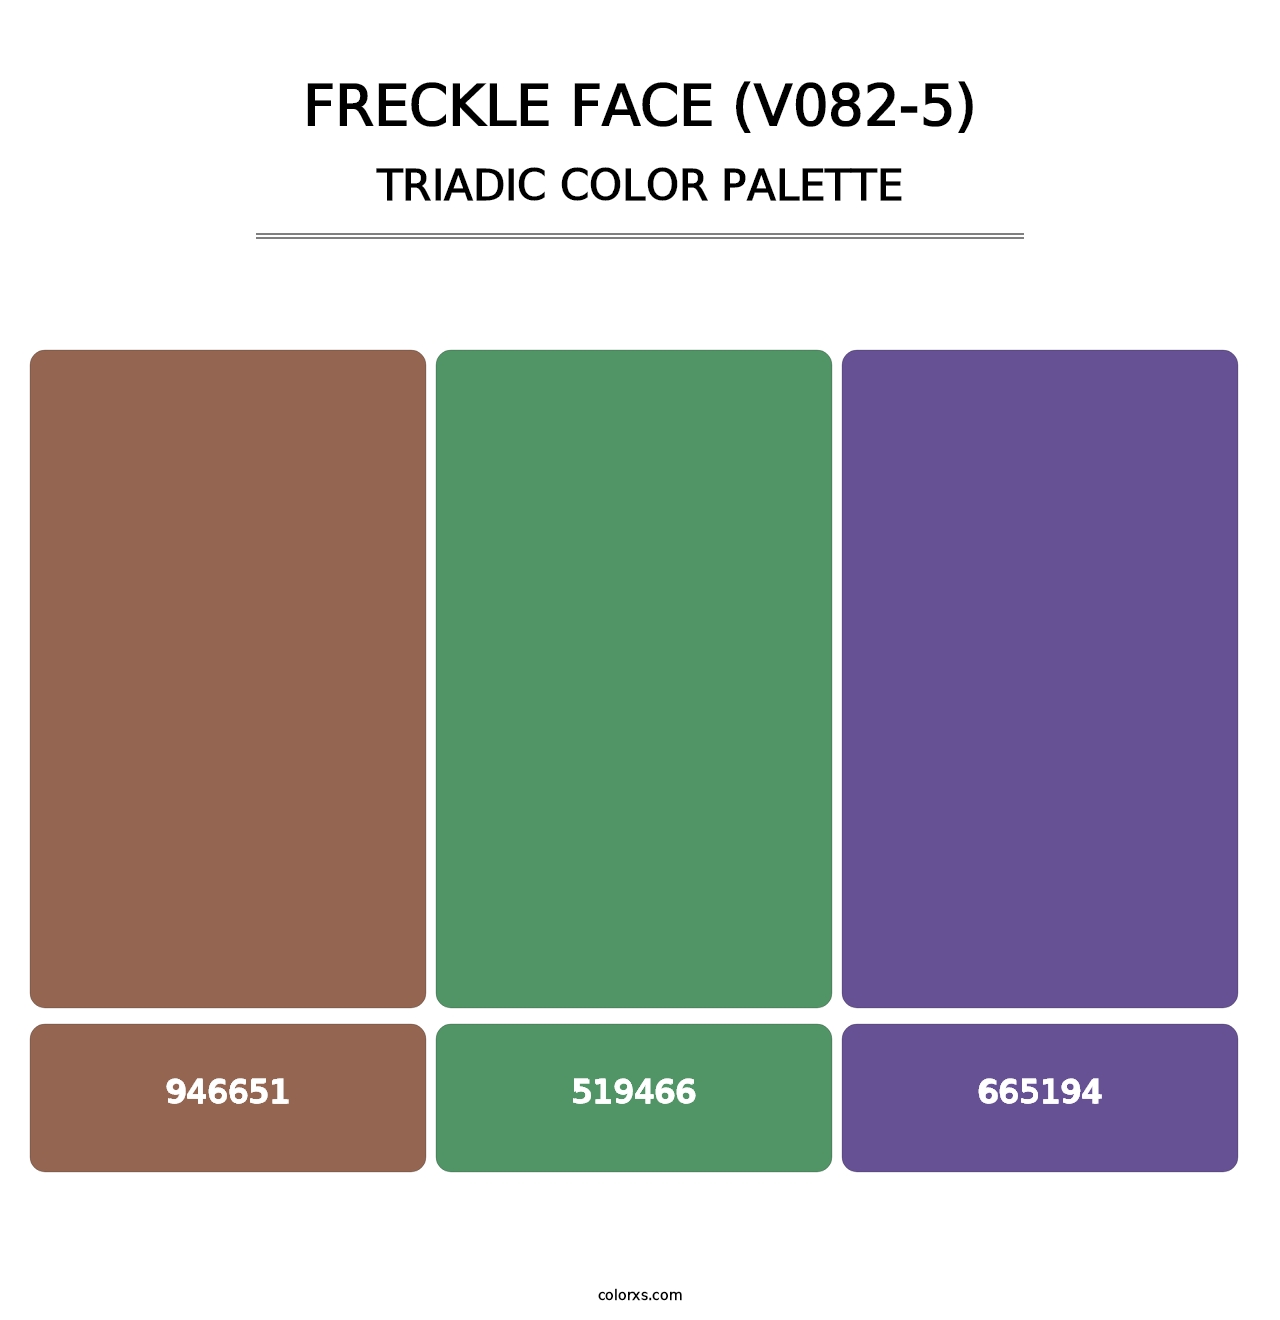 Freckle Face (V082-5) - Triadic Color Palette